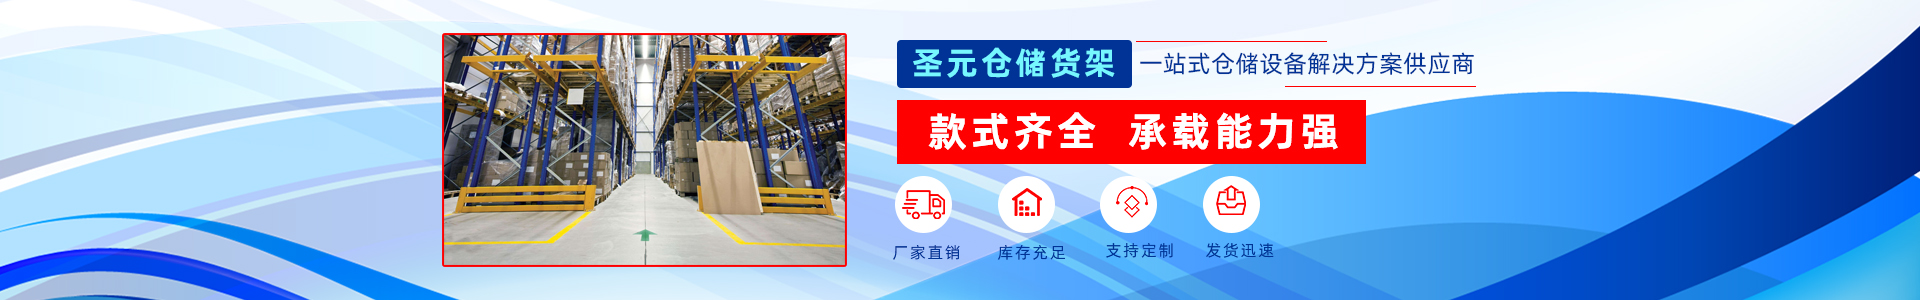 北京圣元恒业货架制造有限公司联系方式